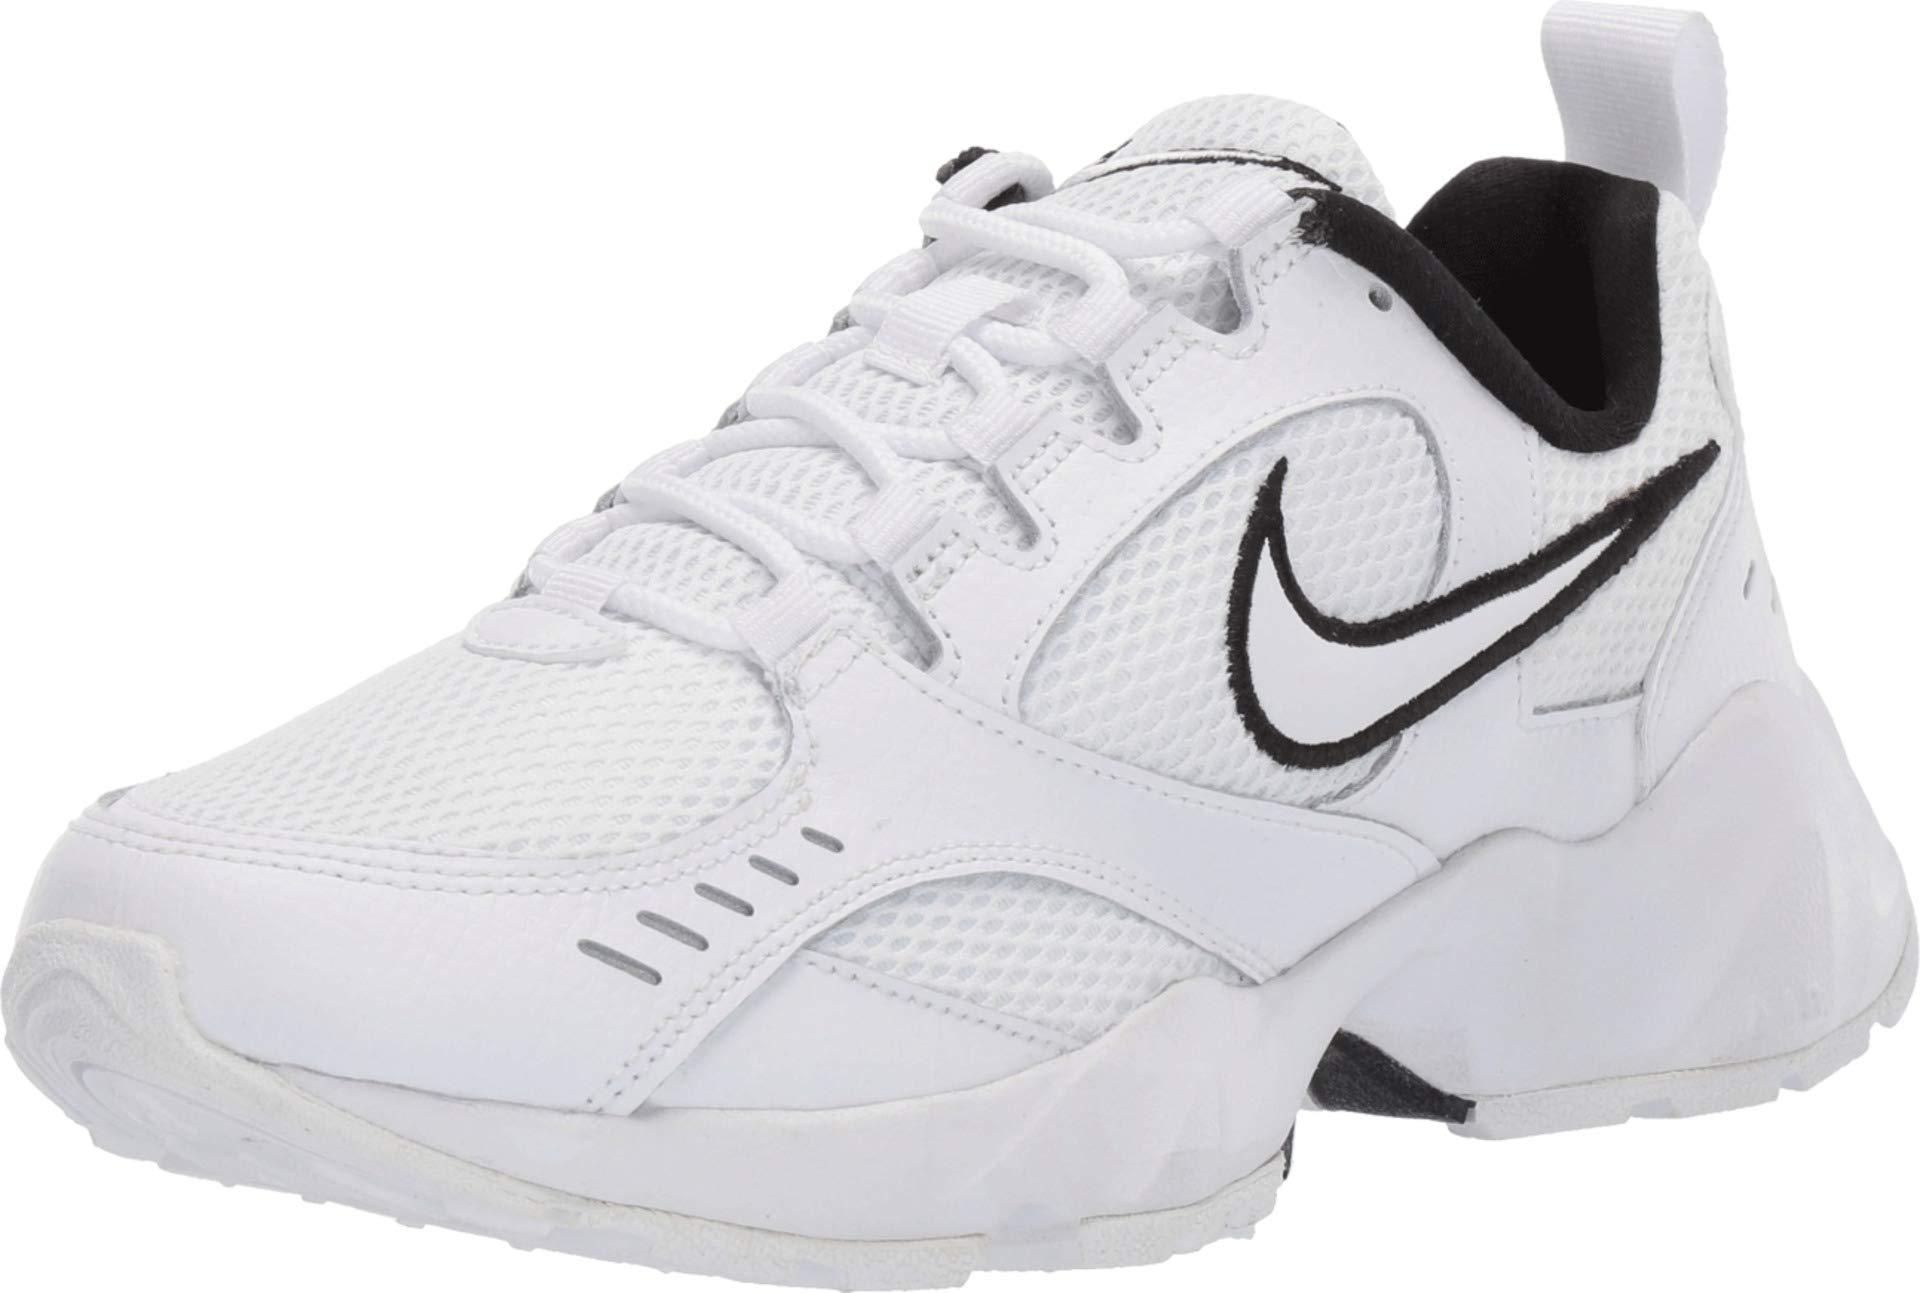 كلمنتان طبيعي Nike Leather Air Heights in White/White/Black (White) | Lyst كلمنتان طبيعي